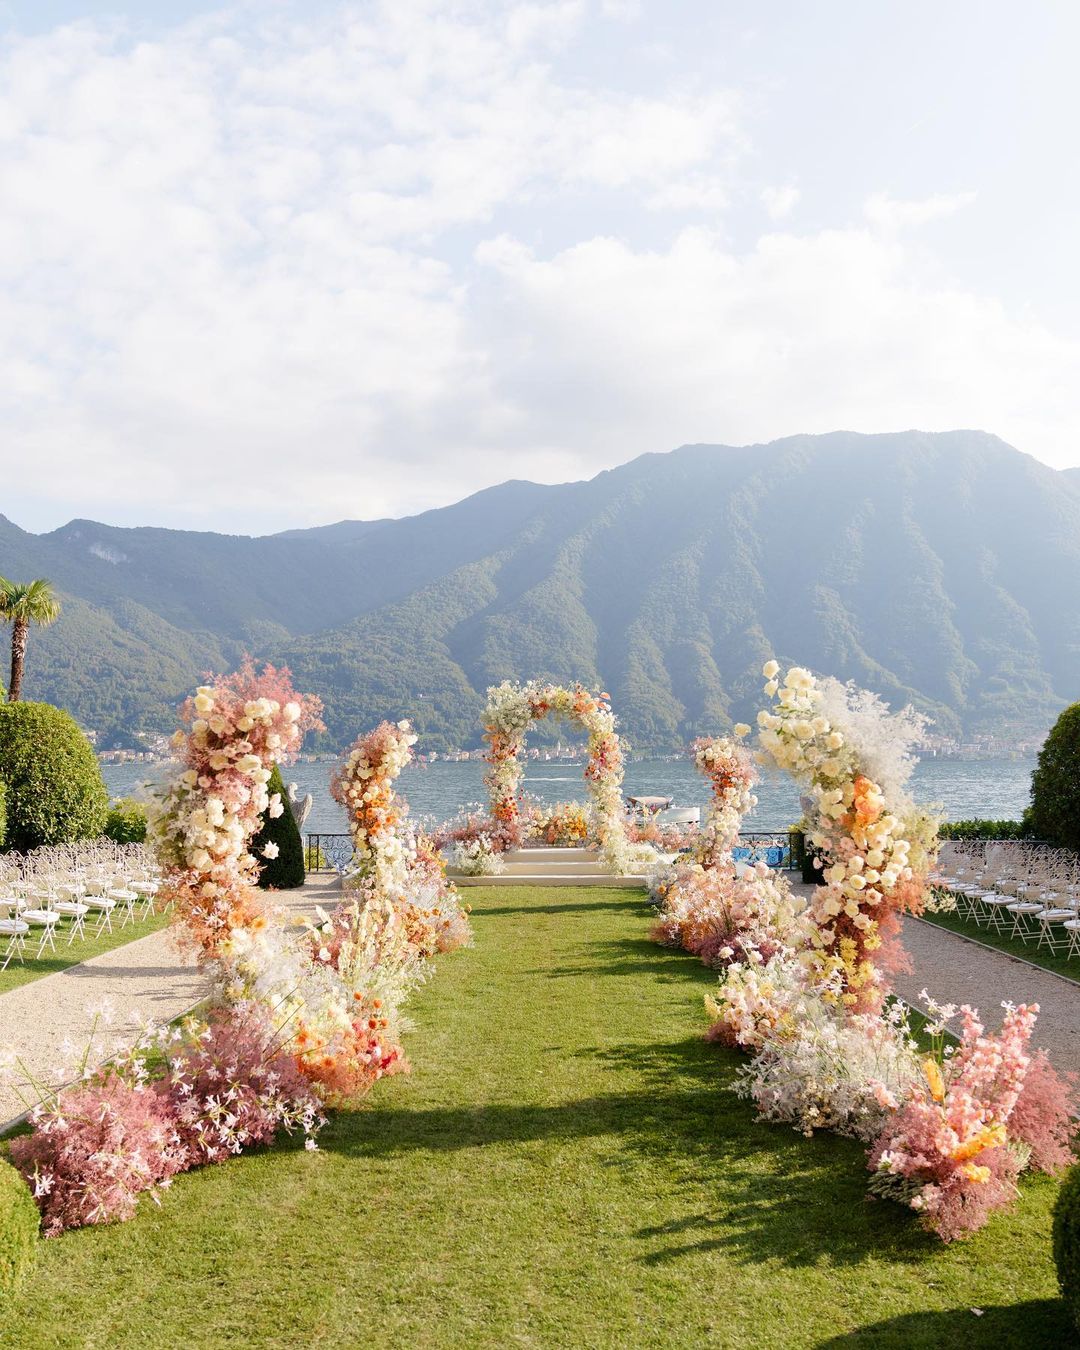 Acontecimentos no Instagram: inspirações florais e cerimônias | foto: Bottega 53